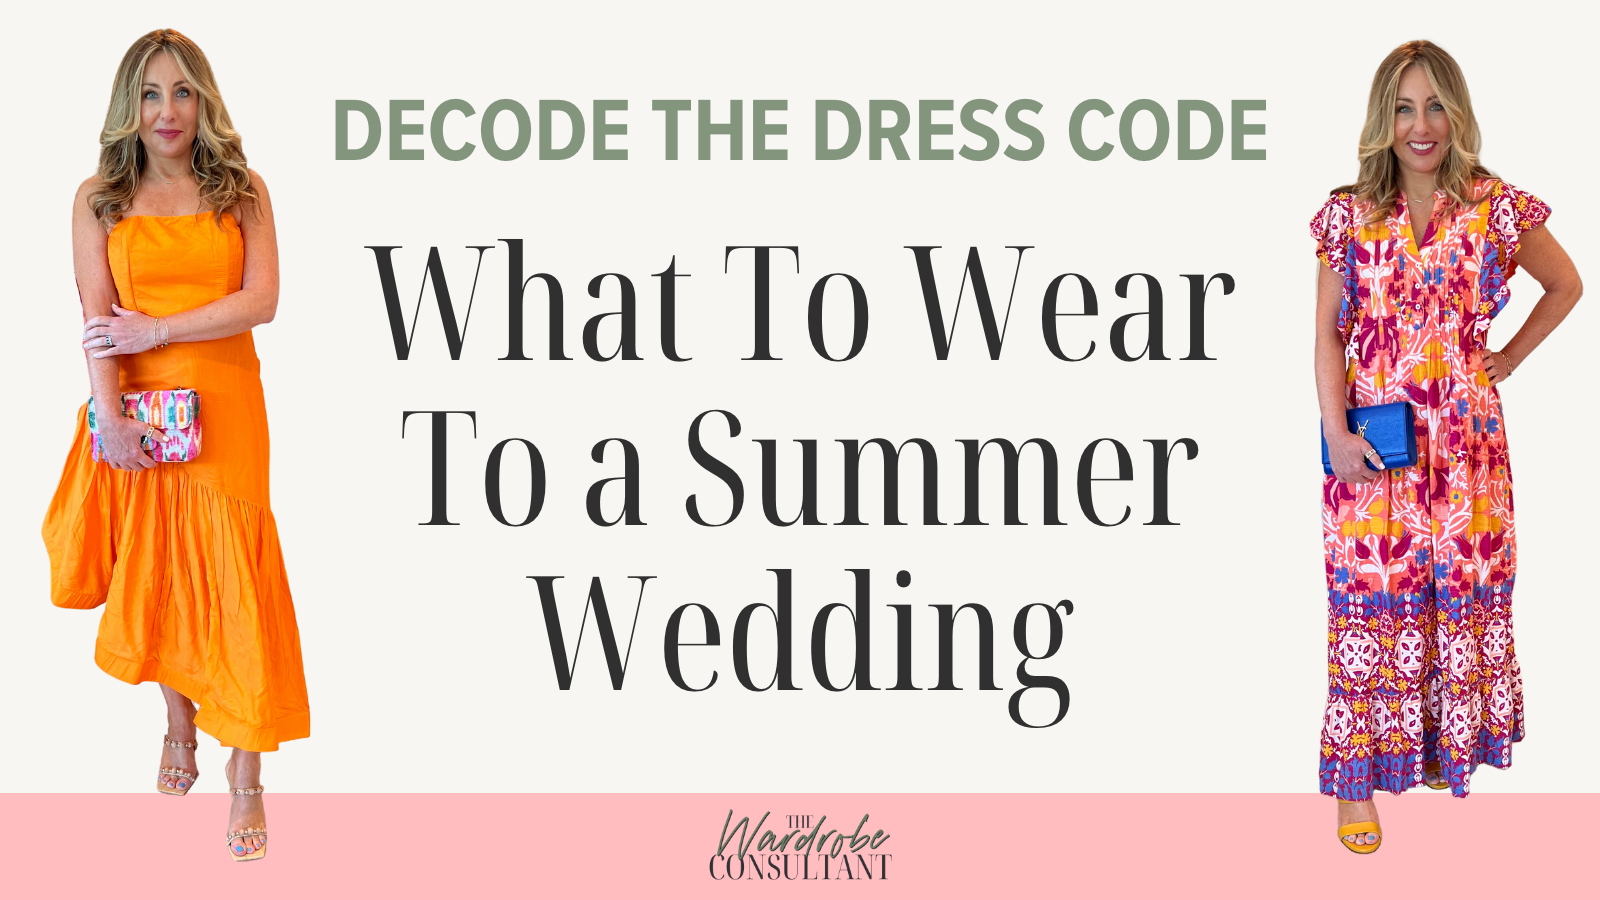 Comfortable dresses for a casual, beach or garden wedding